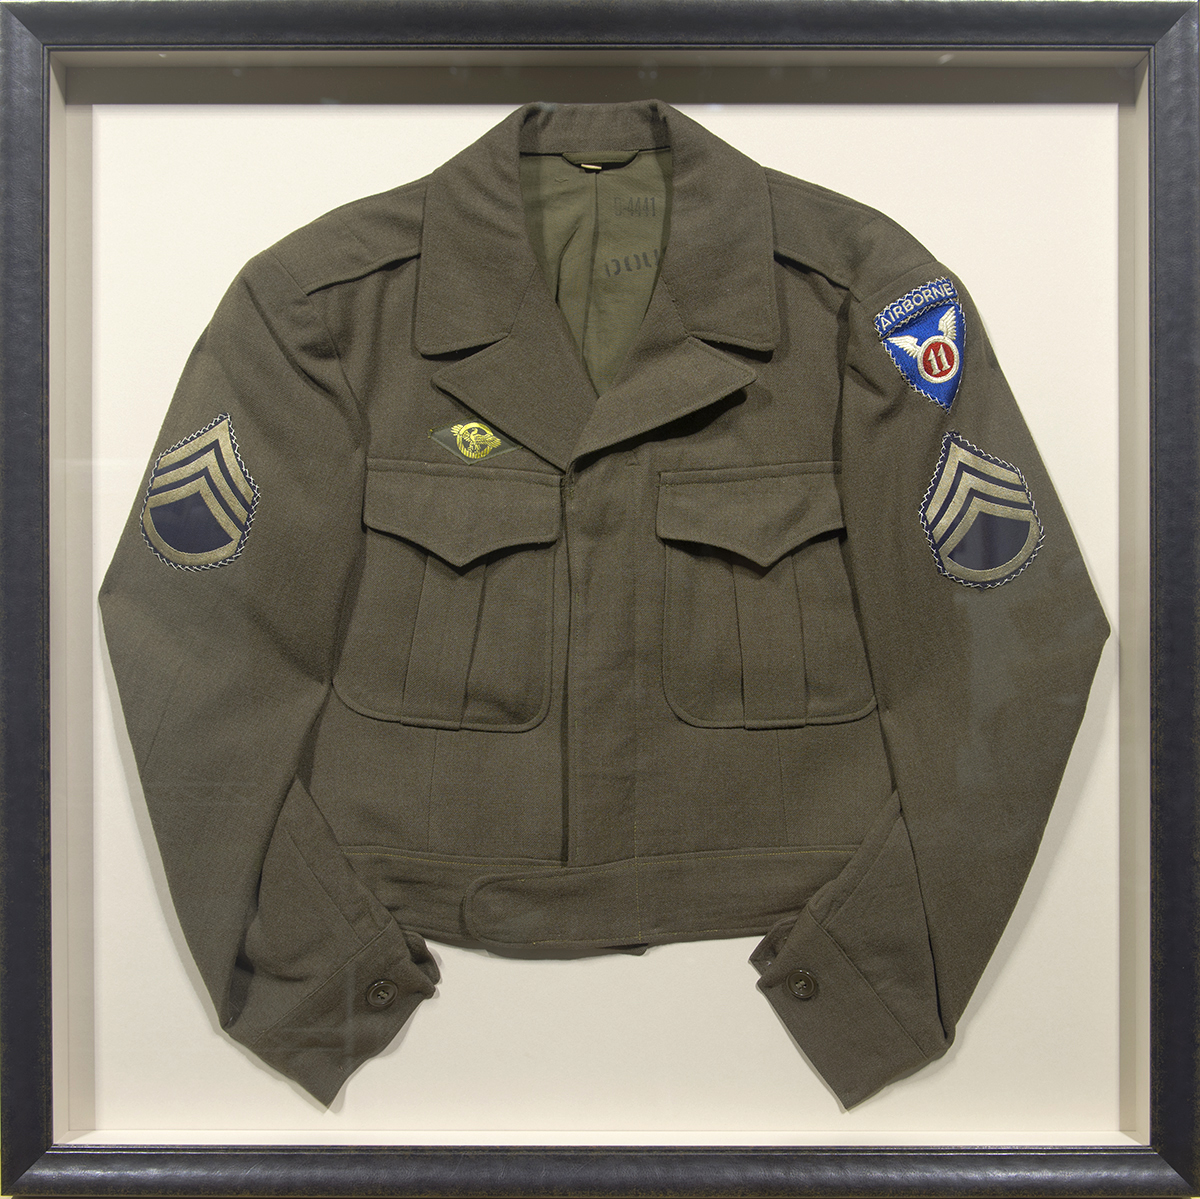 images/Military Uniform Shadowbox_l.jpg